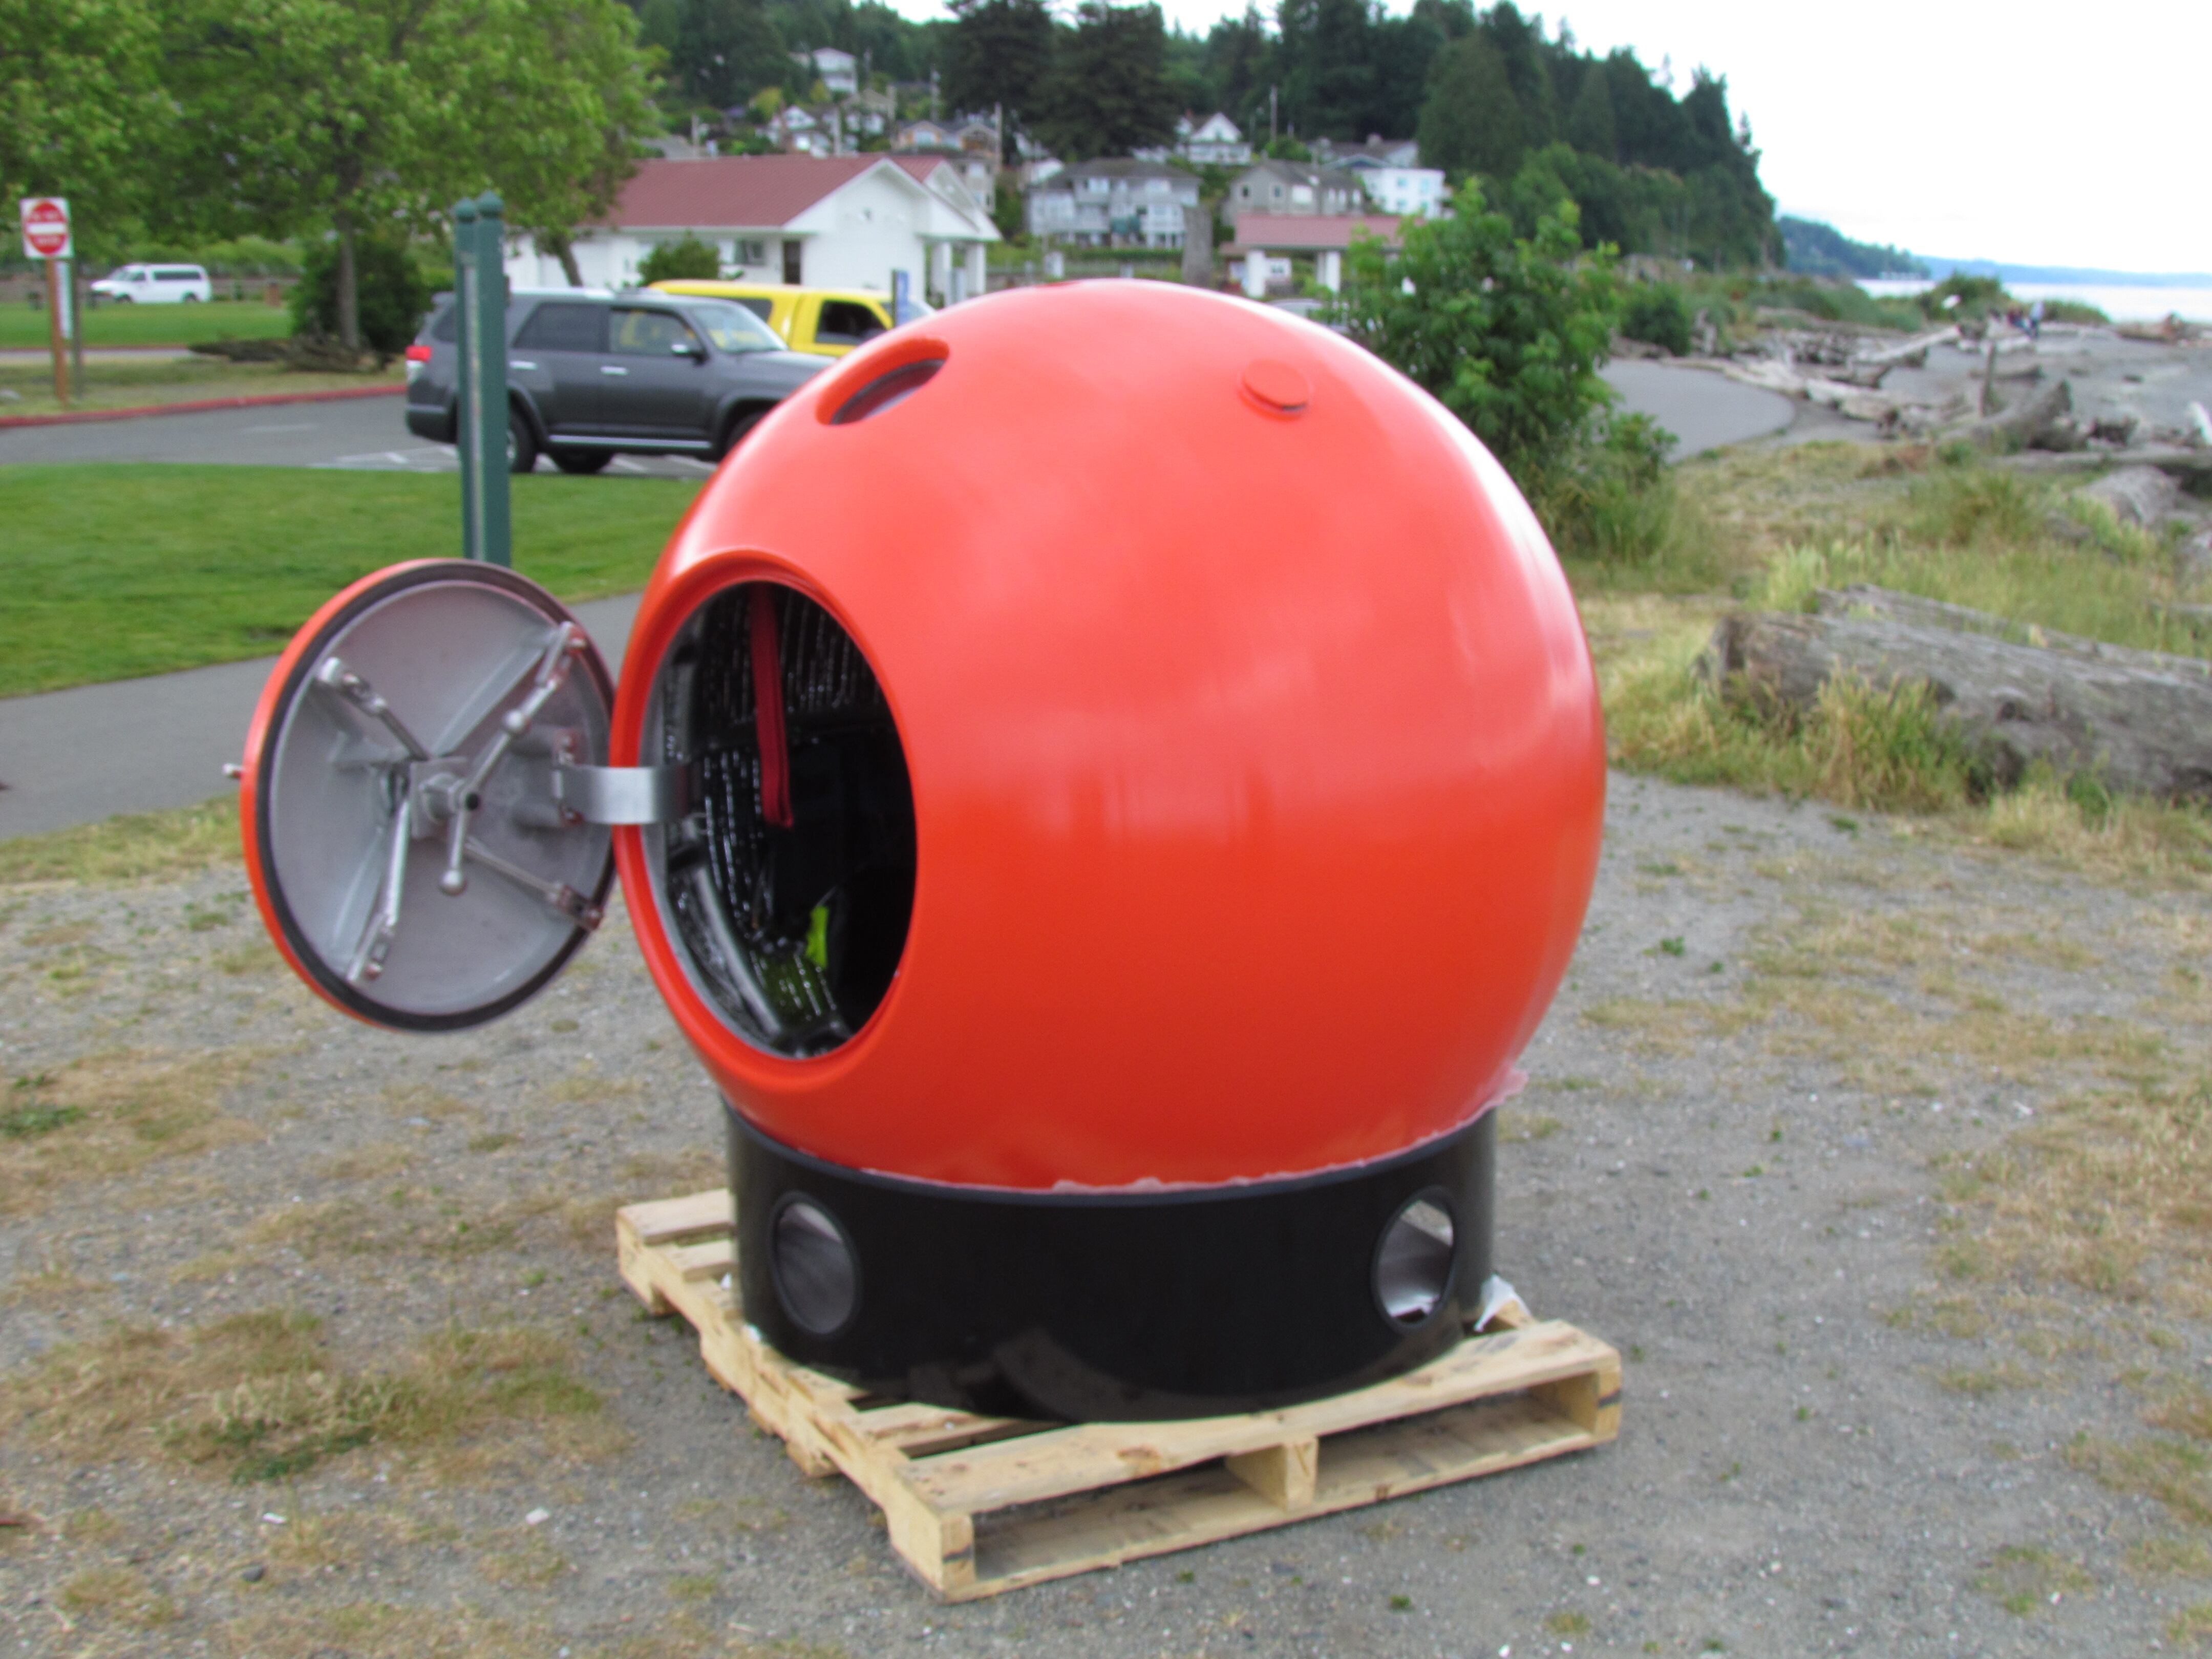 La esfera está diseñada para proteger a más de una persona en su interior. (Foto: survival-capsule.com)